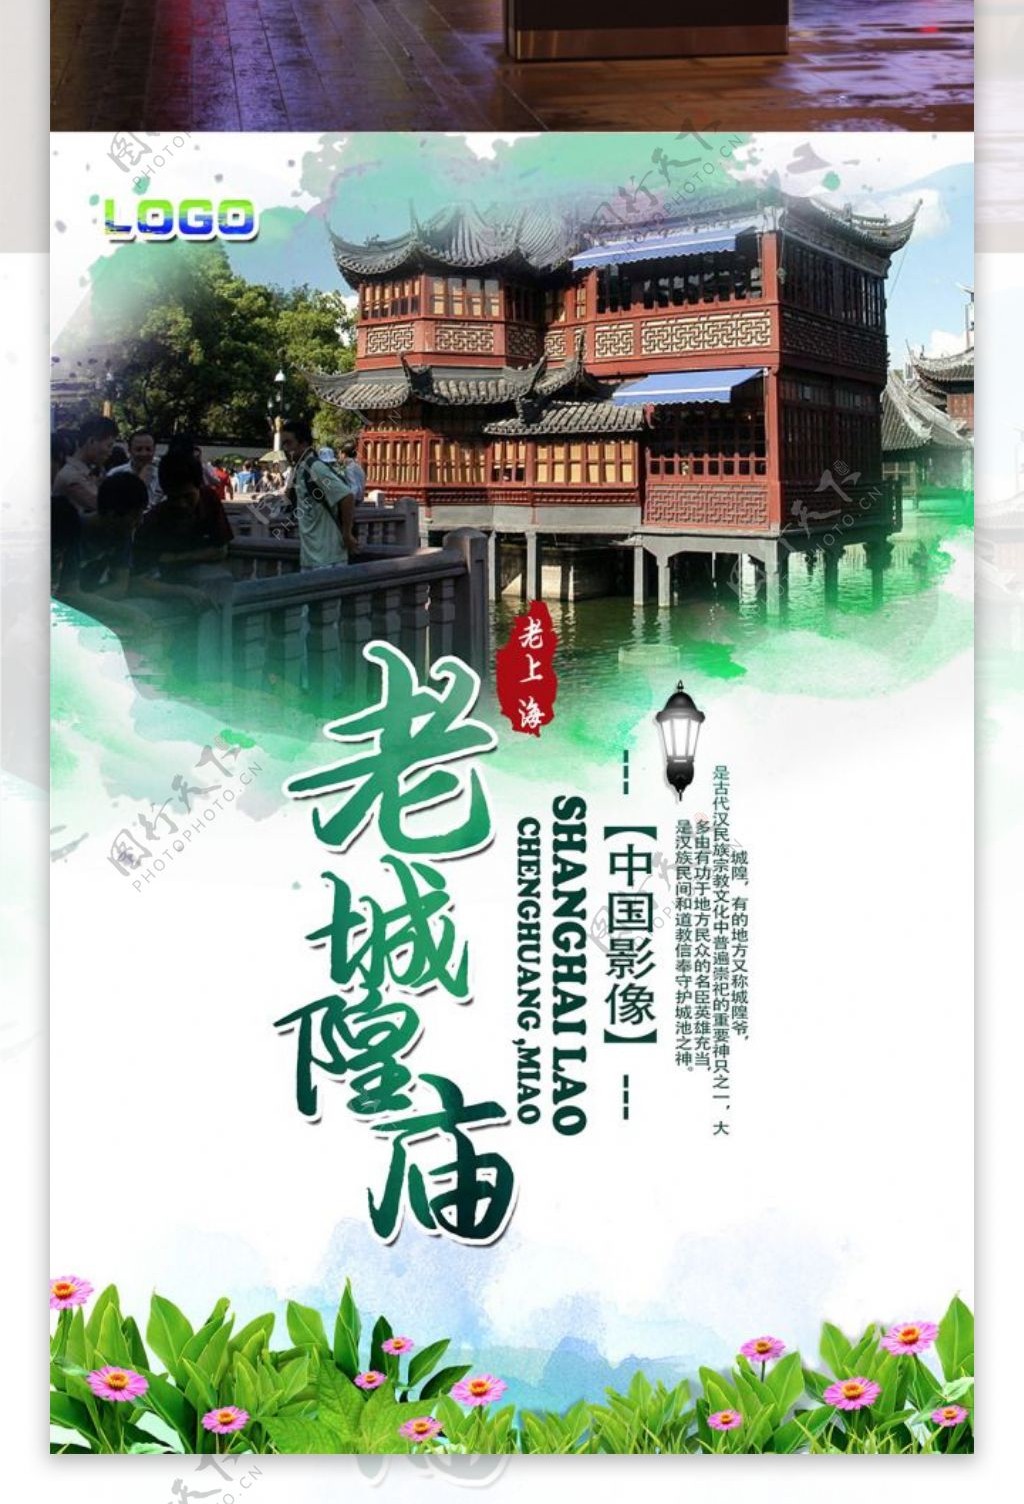 上海老城隍庙旅游海报